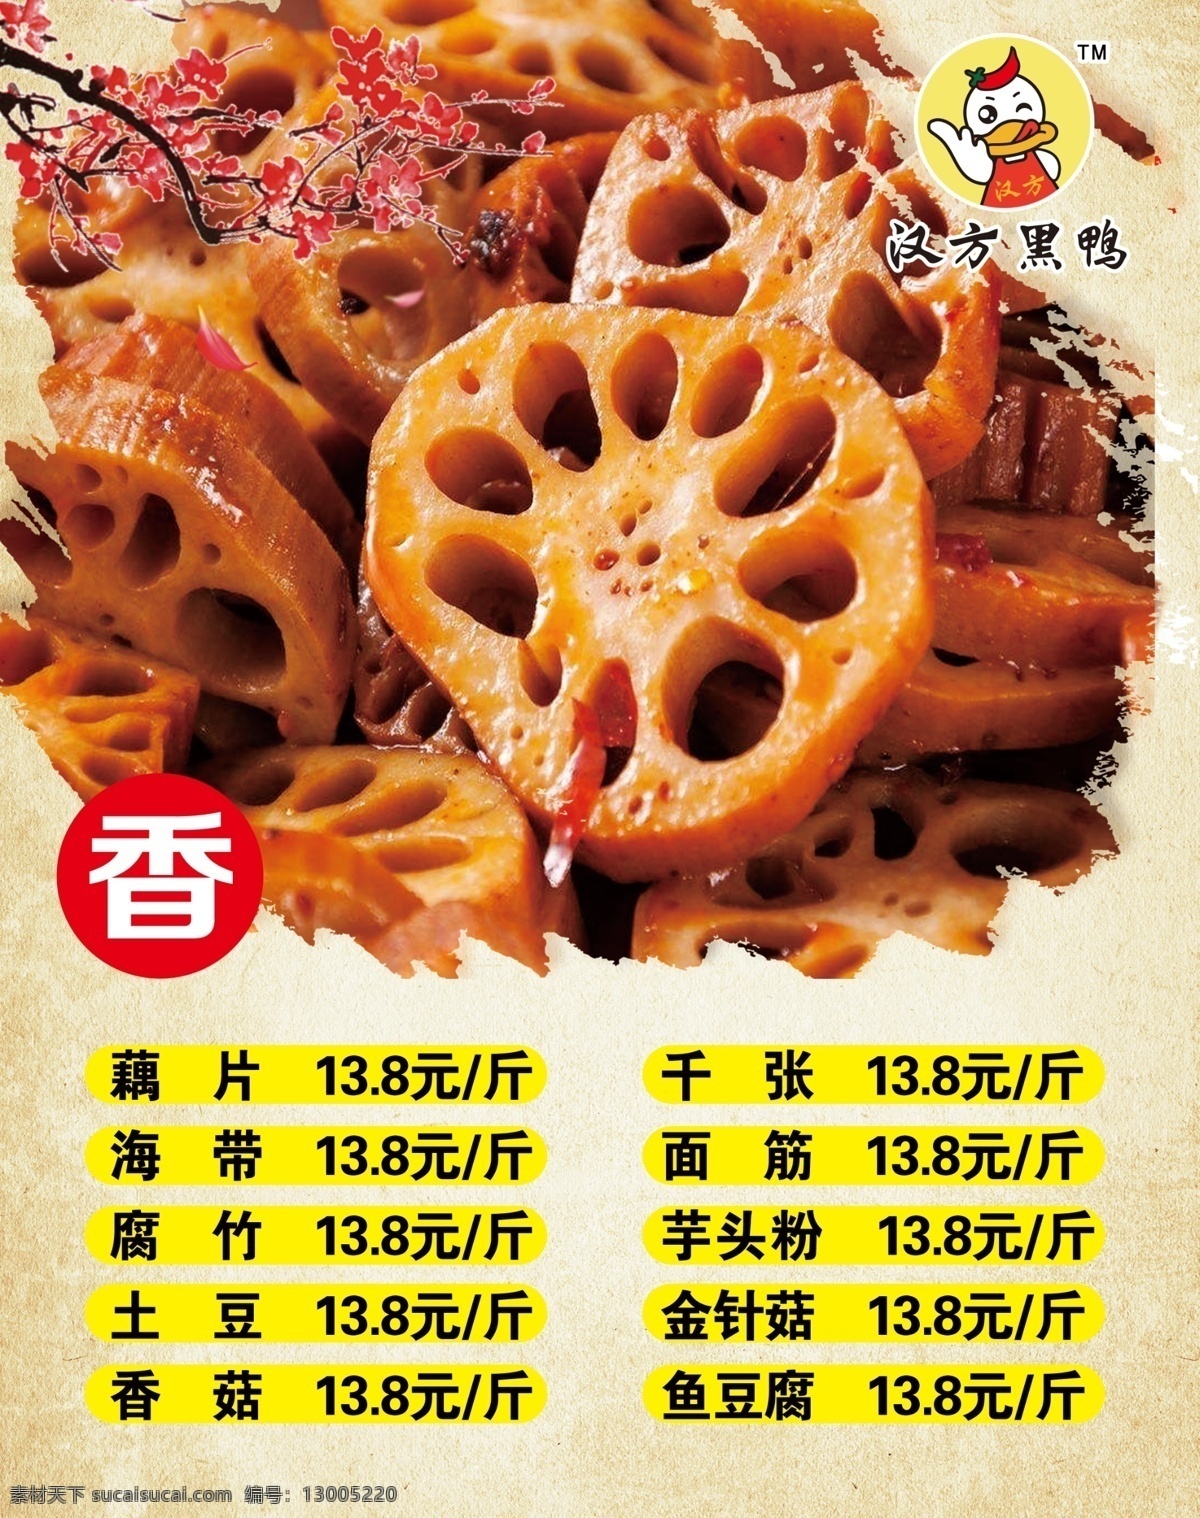 藕片图片 藕片 海带 香 腌制 价格 海报